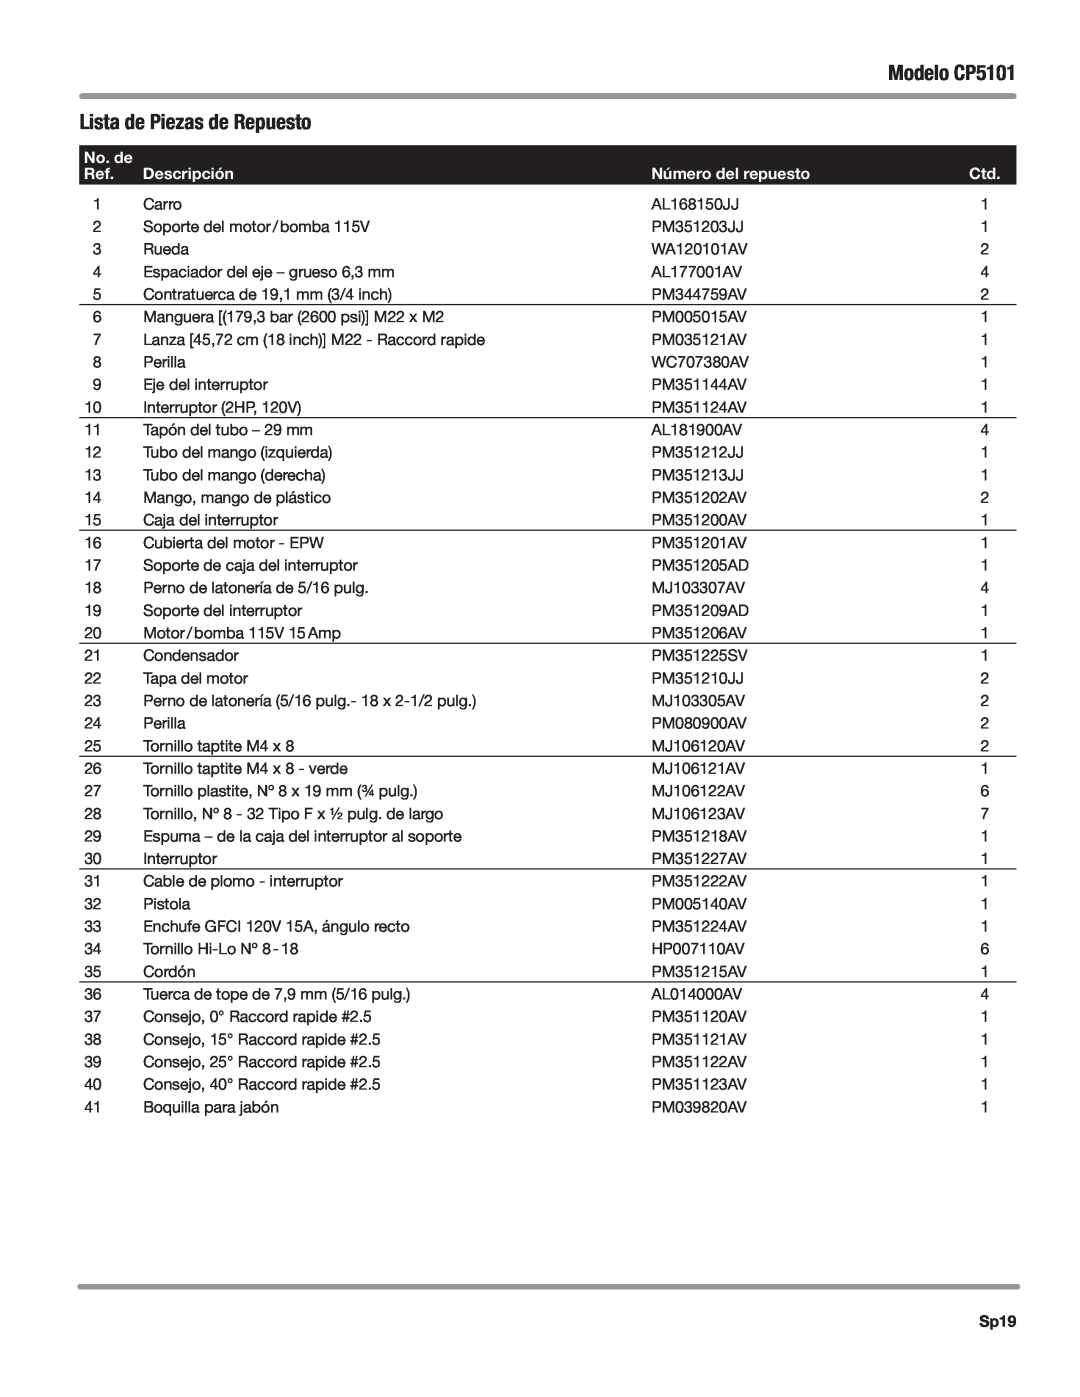 Campbell Hausfeld manual Lista de Piezas de Repuesto, Modelo CP5101, Descripción, número del repuesto, Sp19, No. de 